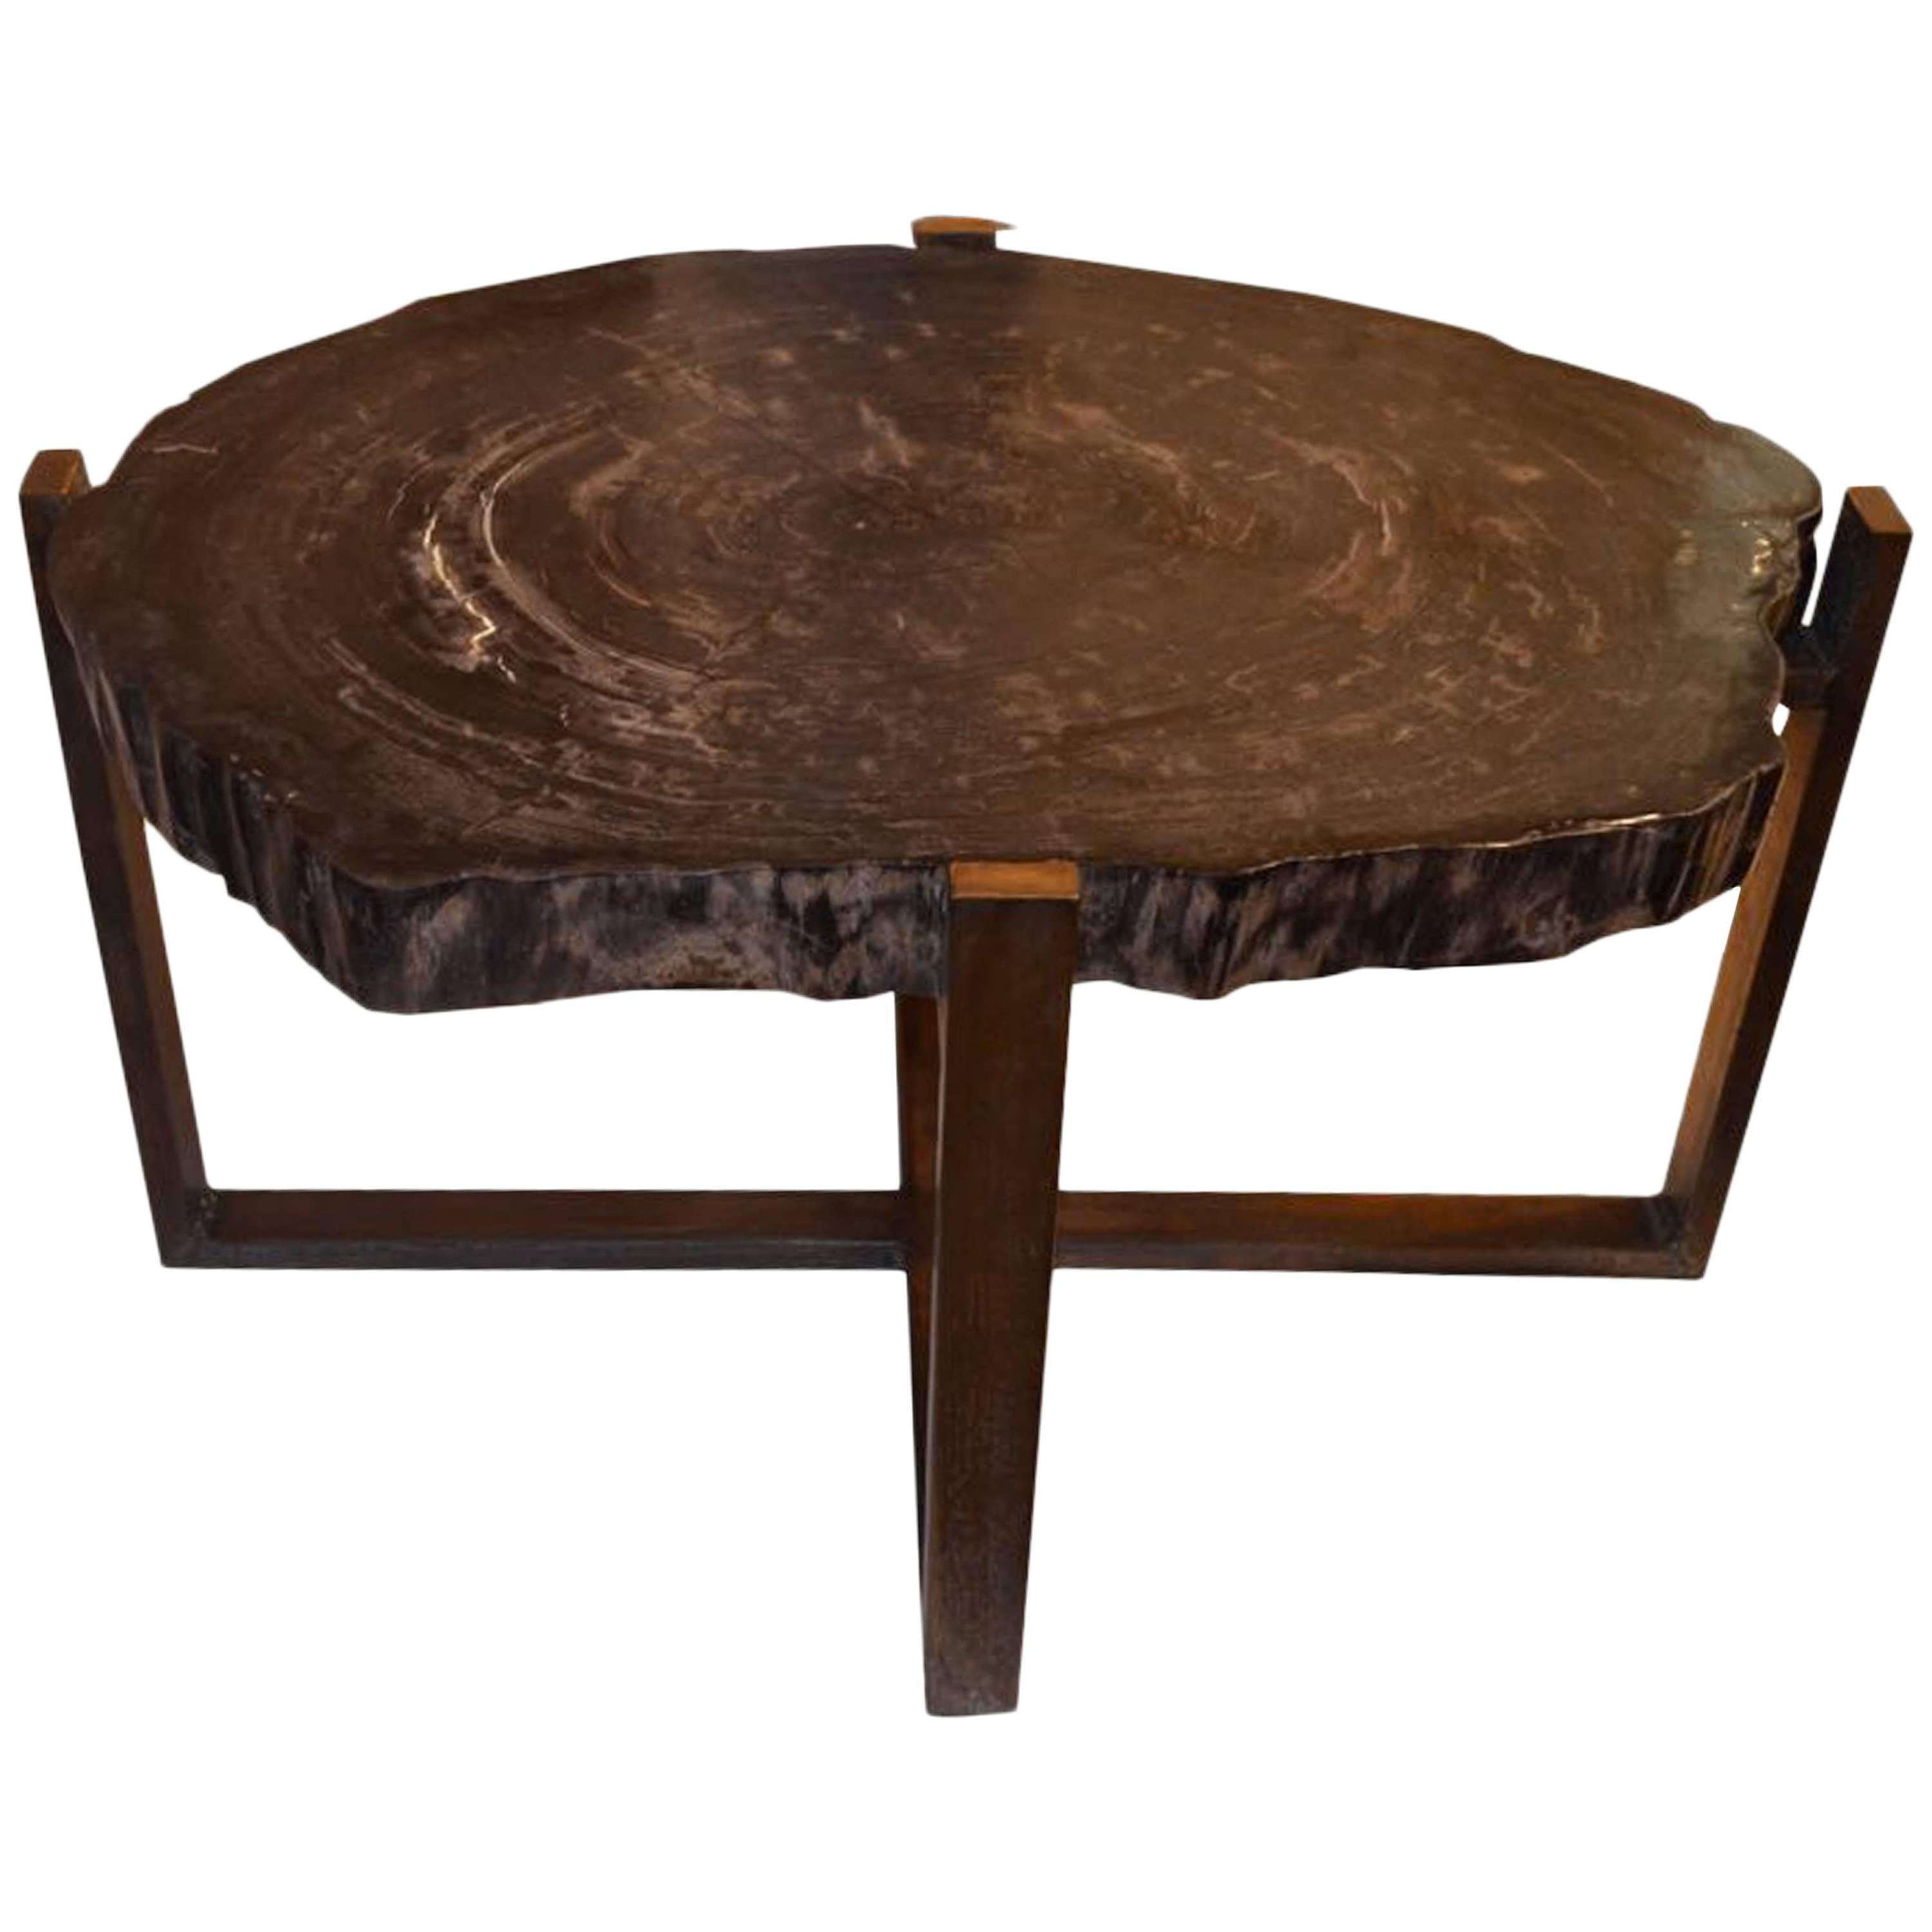 Andrianna Shamaris Petrified Wood Slab Table with Bronze Base